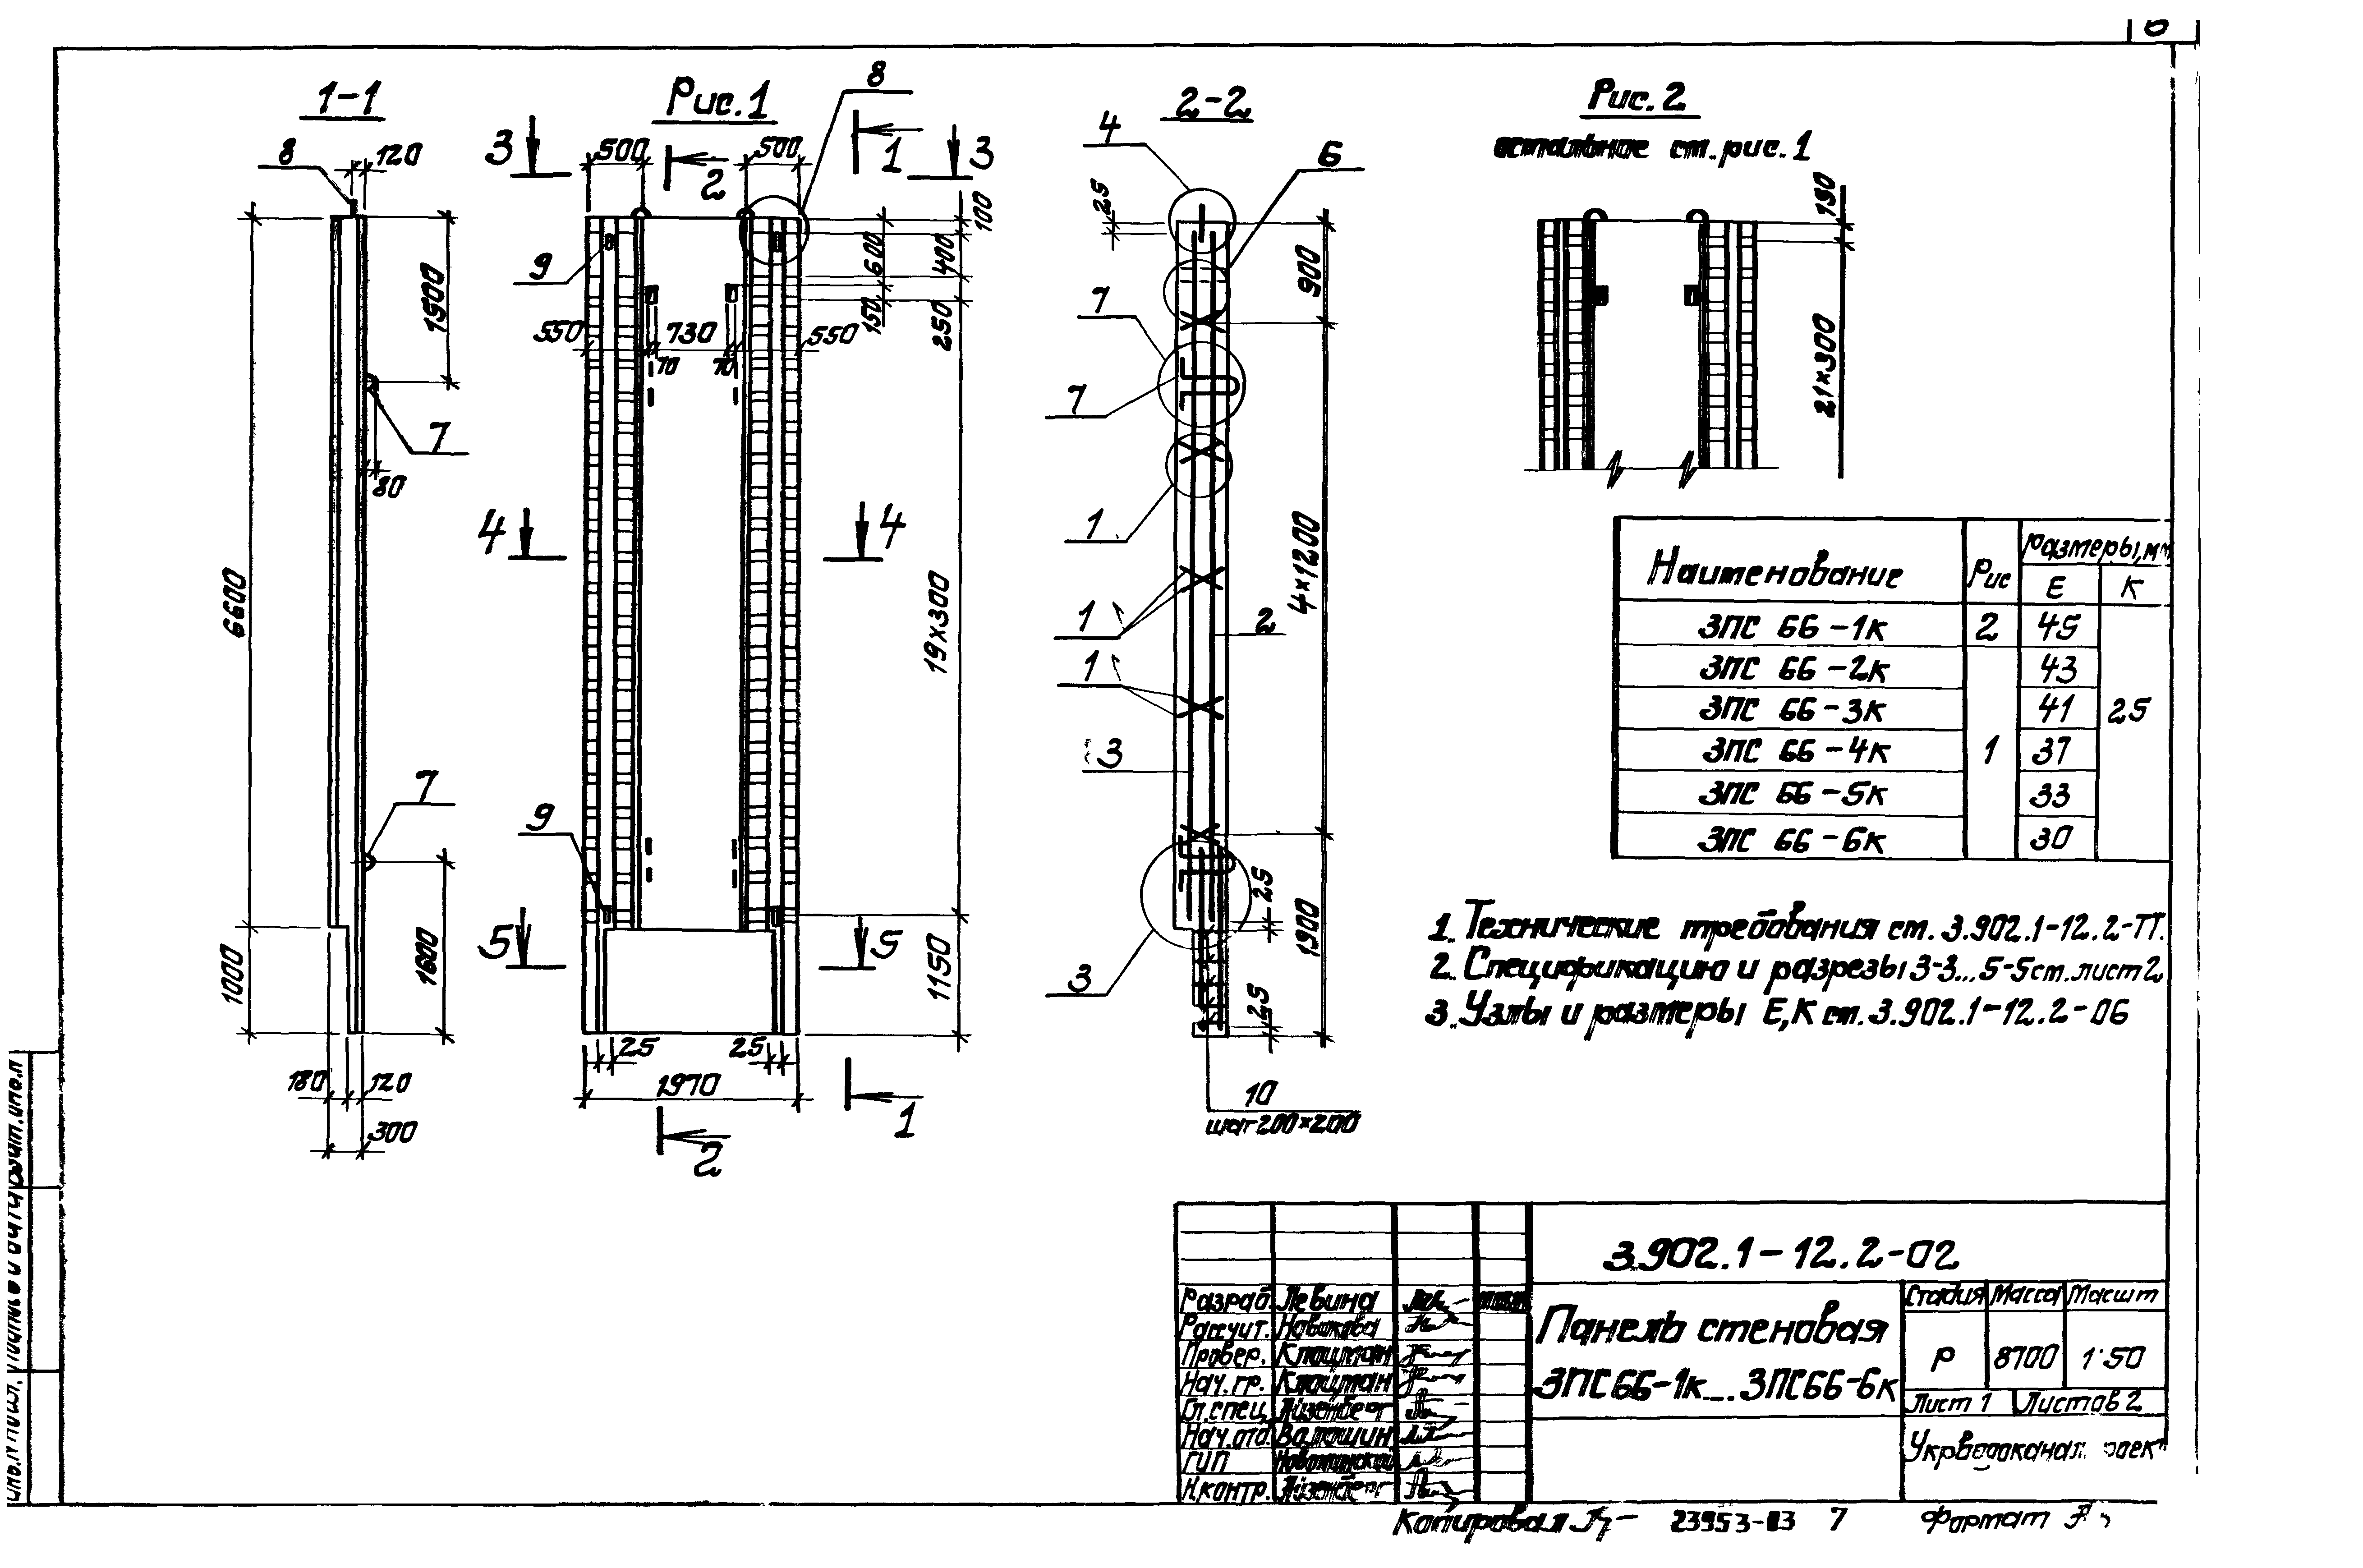 Панель стеновая 3ПС66-6к Серия 3.902.1-12, вып.2